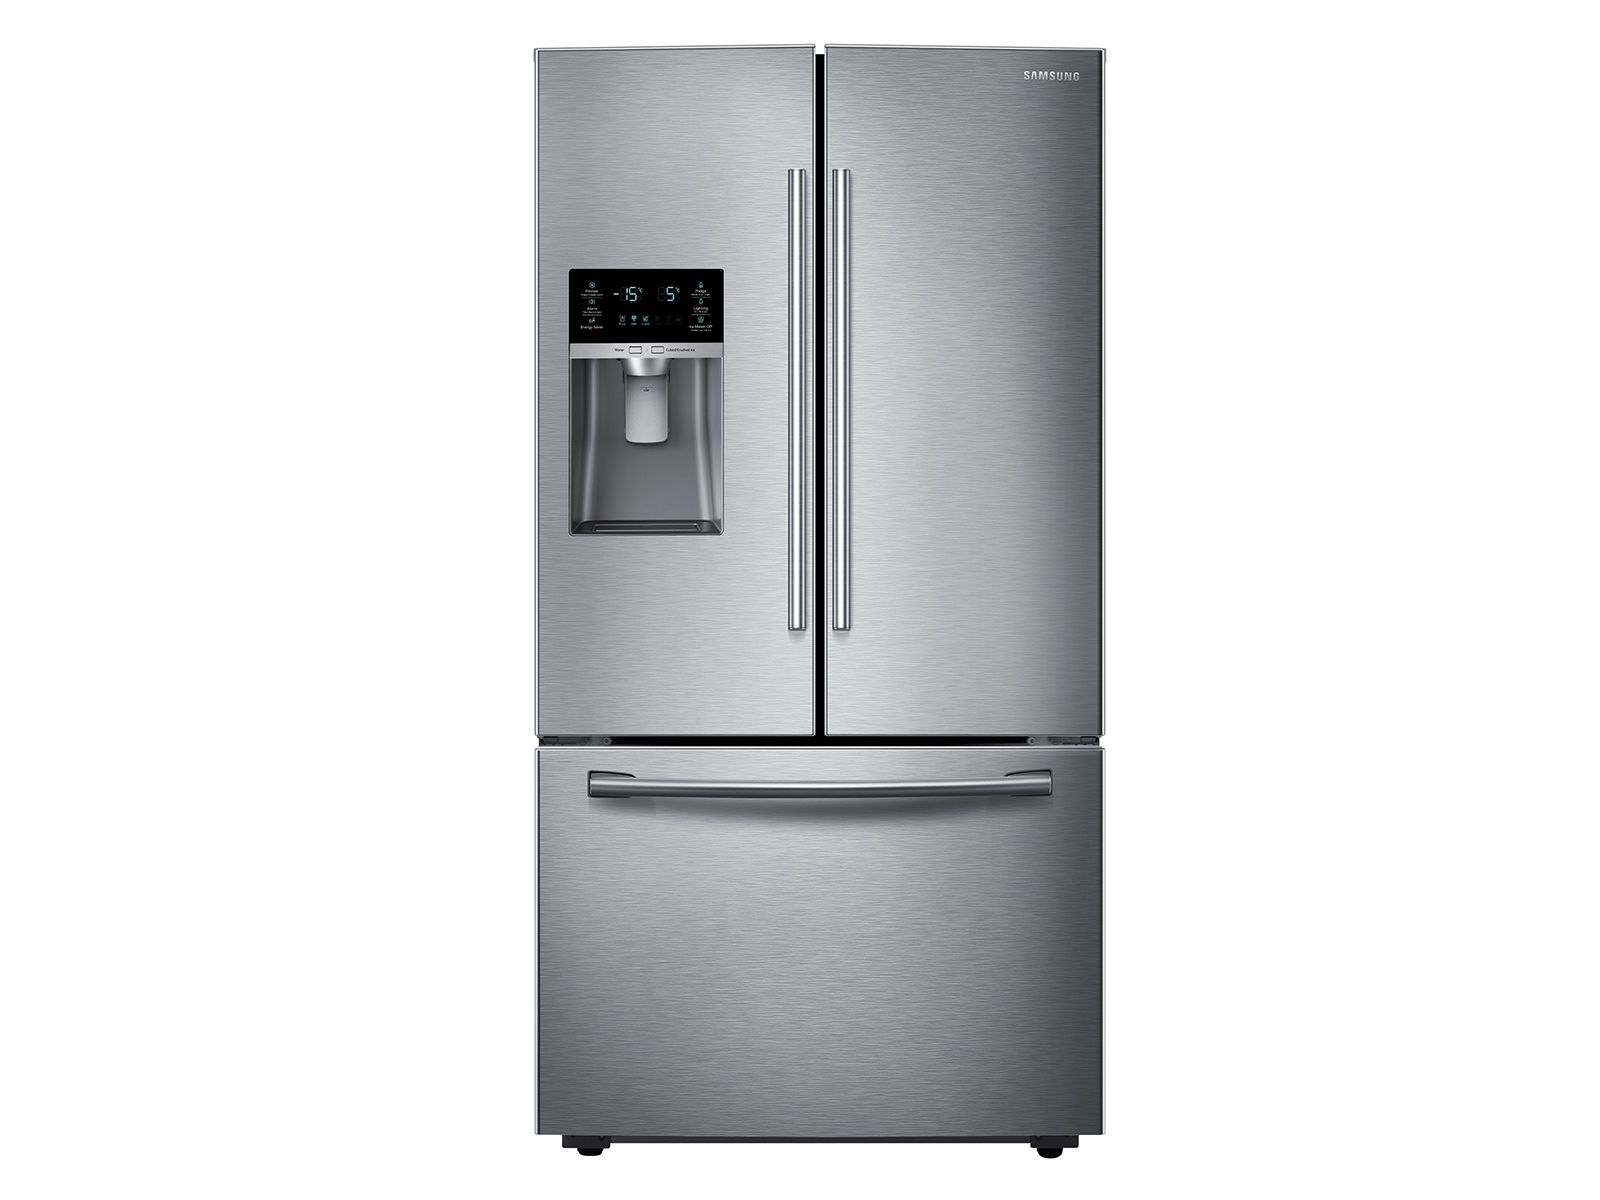 engranaje ángel Desplazamiento 28 cu. ft. Refrigerador de puerta francesa con CoolSelect Pantry™,  refrigeradores duales para hacer hielo - RF28HFEDTSR/AA | Samsung ES